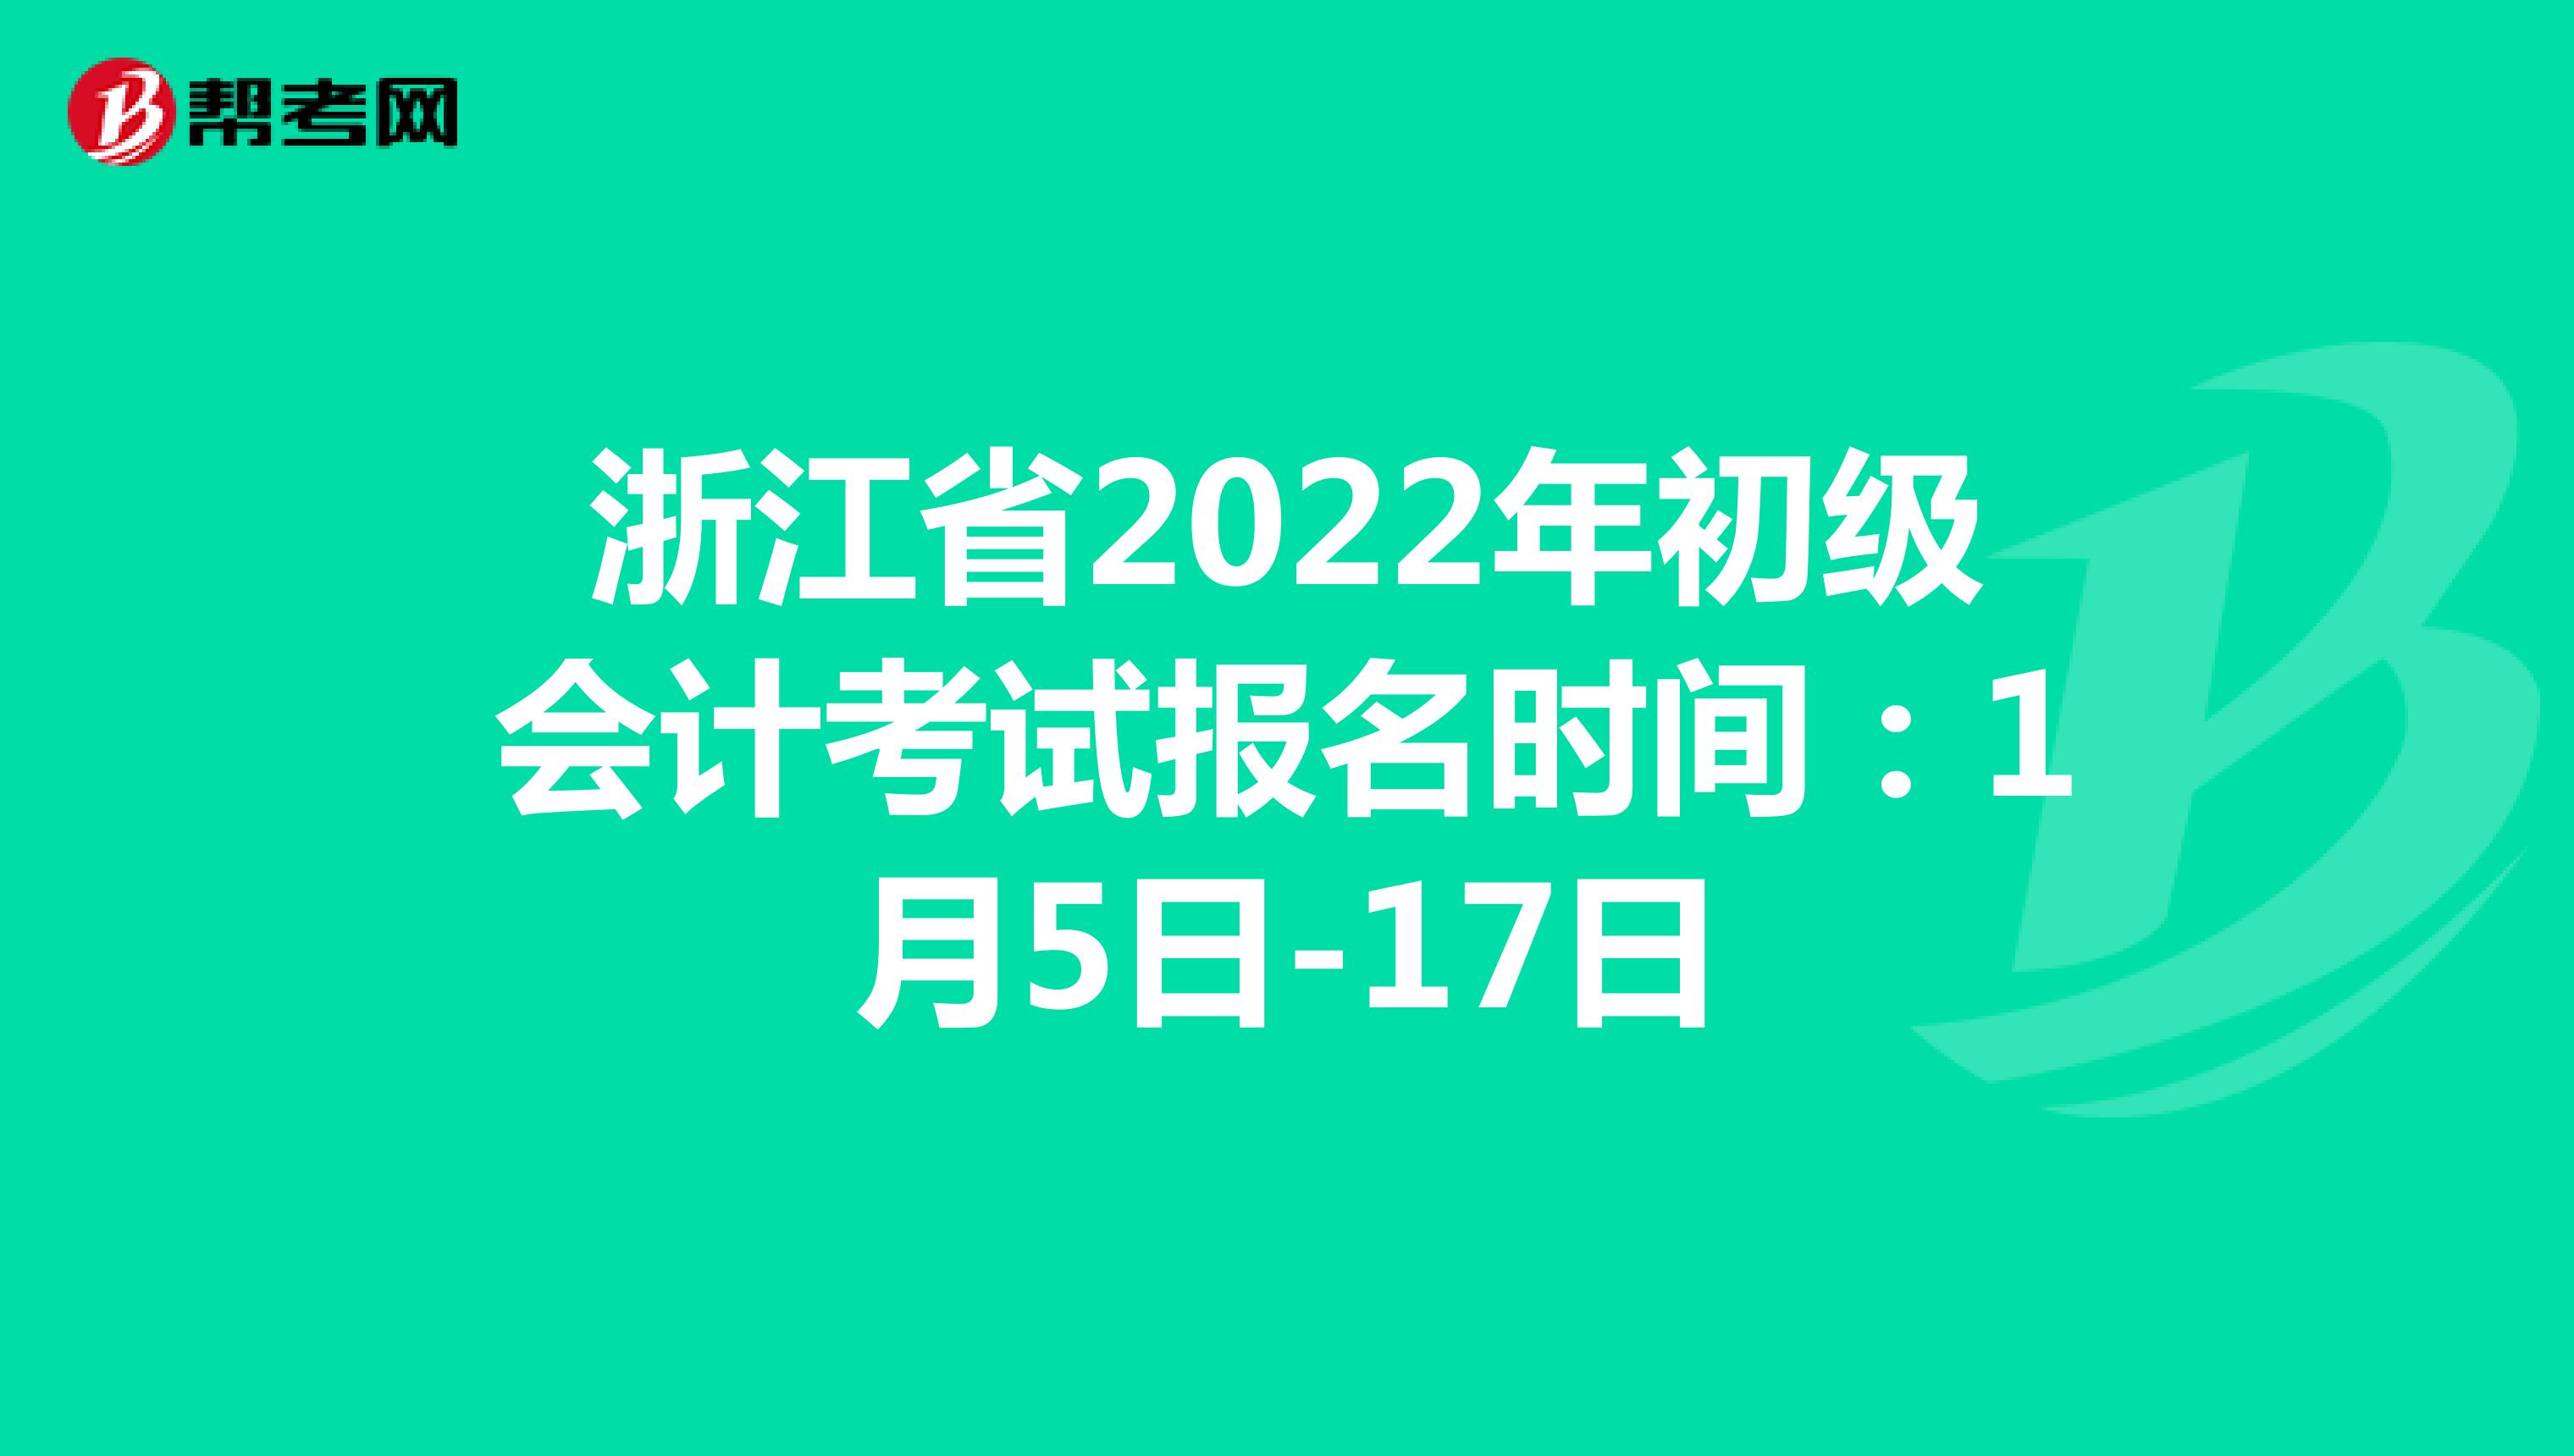 浙江省2022年初级会计考试报名时间：1月5日-17日，补报名时间：1月21日-24日